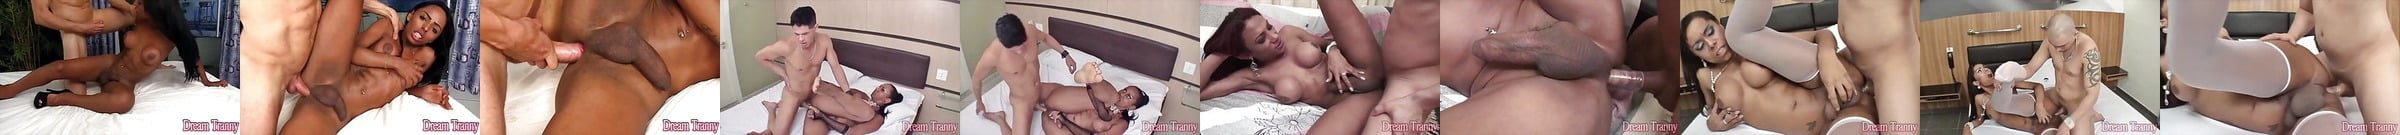 Featured Dream Tranny Shemale Porn Videos